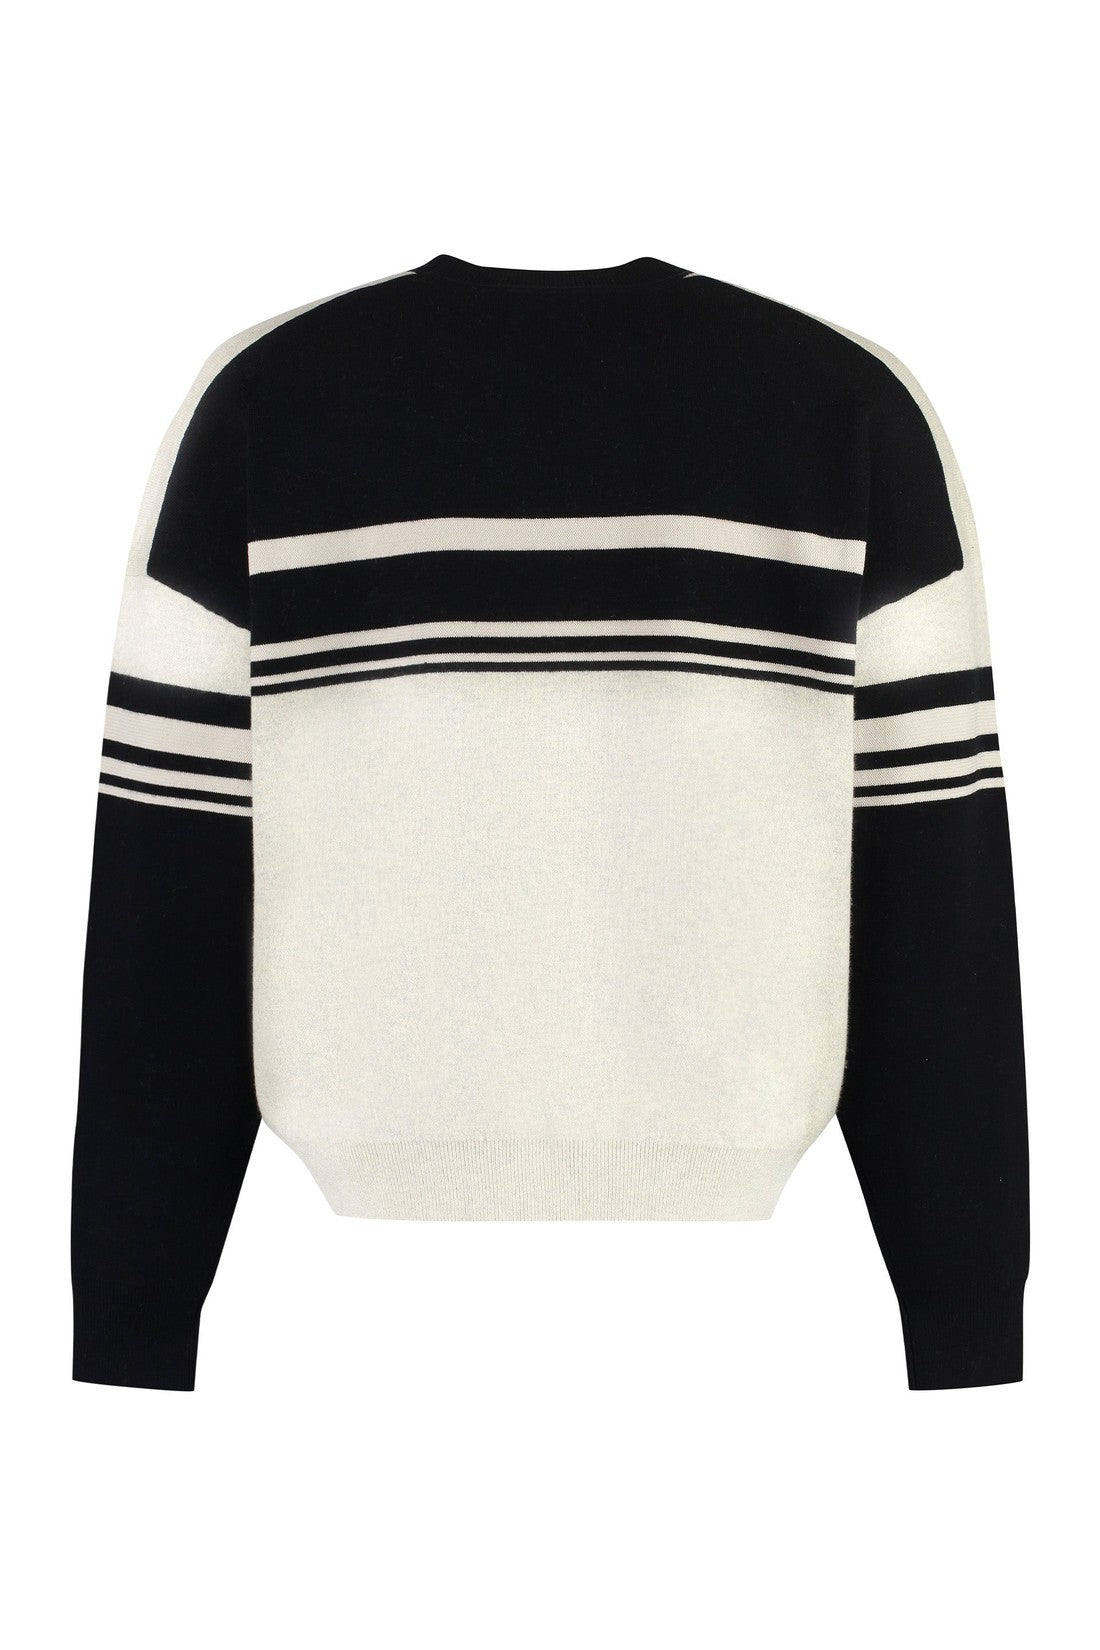 Isabel Marant-OUTLET-SALE-Cotton blend crew-neck sweater-ARCHIVIST